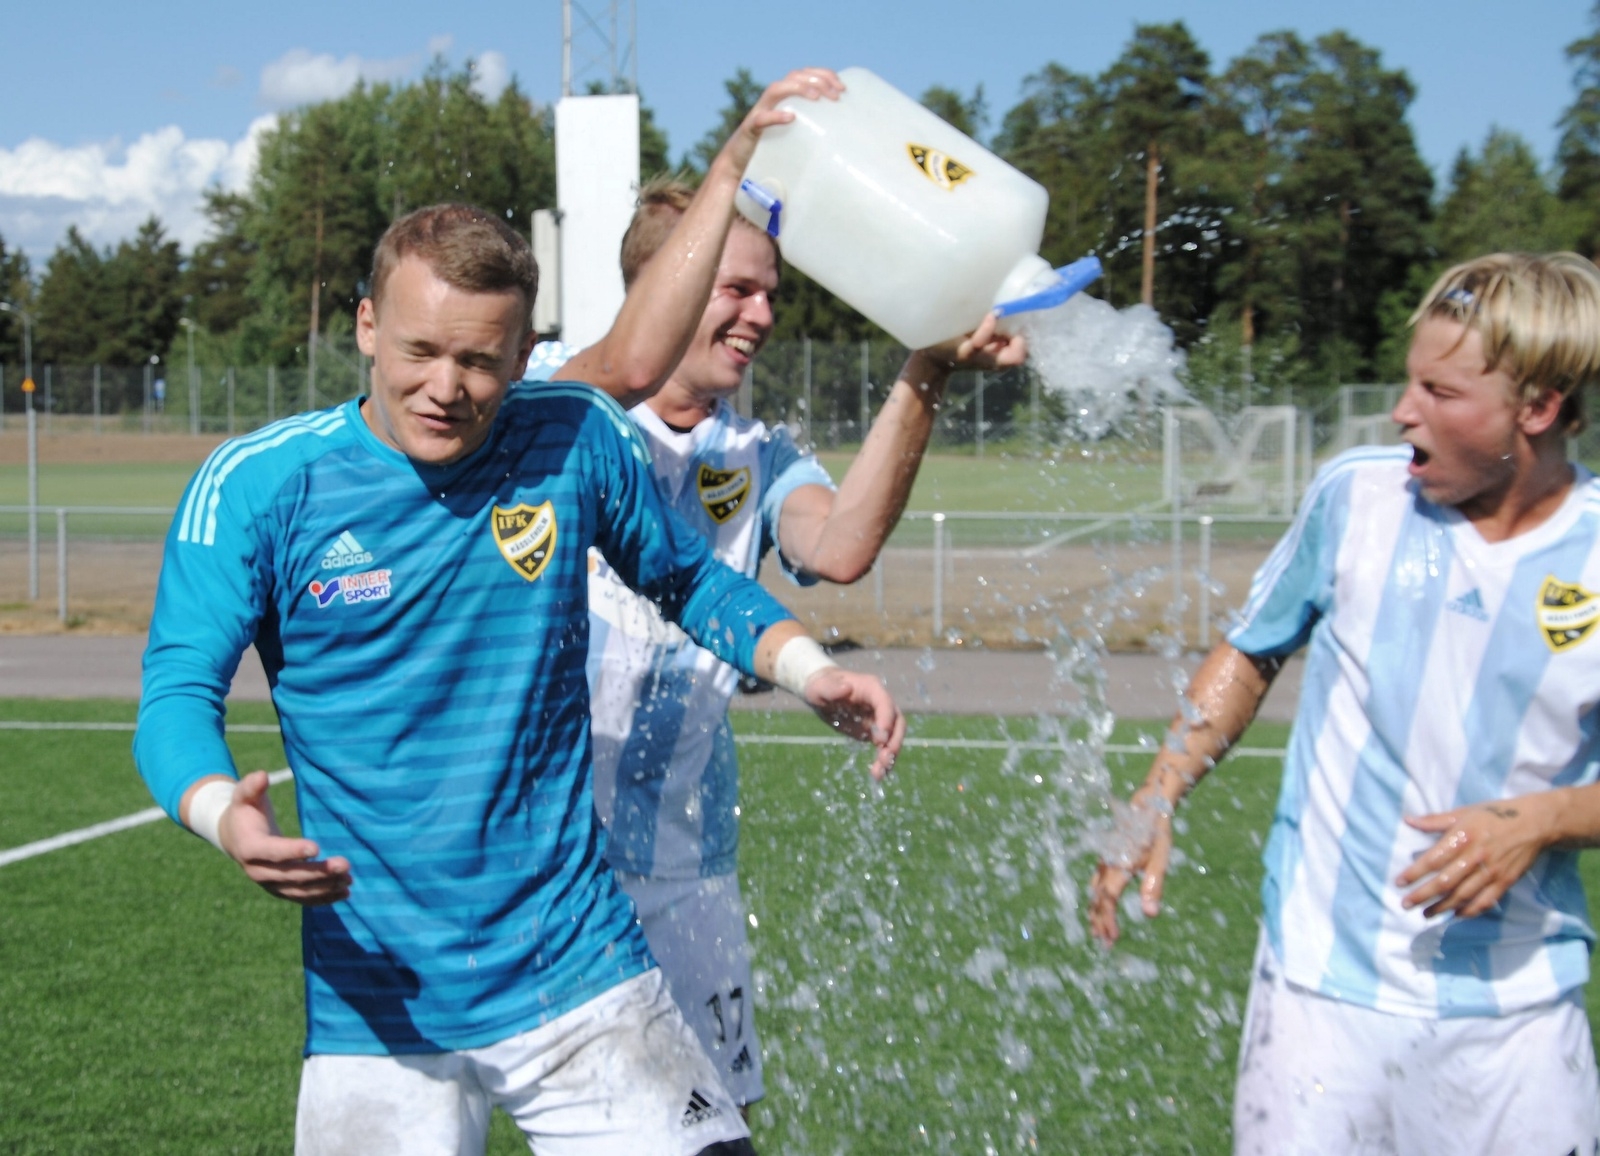 Filip Ranmo firar genom att tömma vattendunken över Adam Larsson och Gustaf Lindroth. Foto: Johannes Höghäll Johnsson